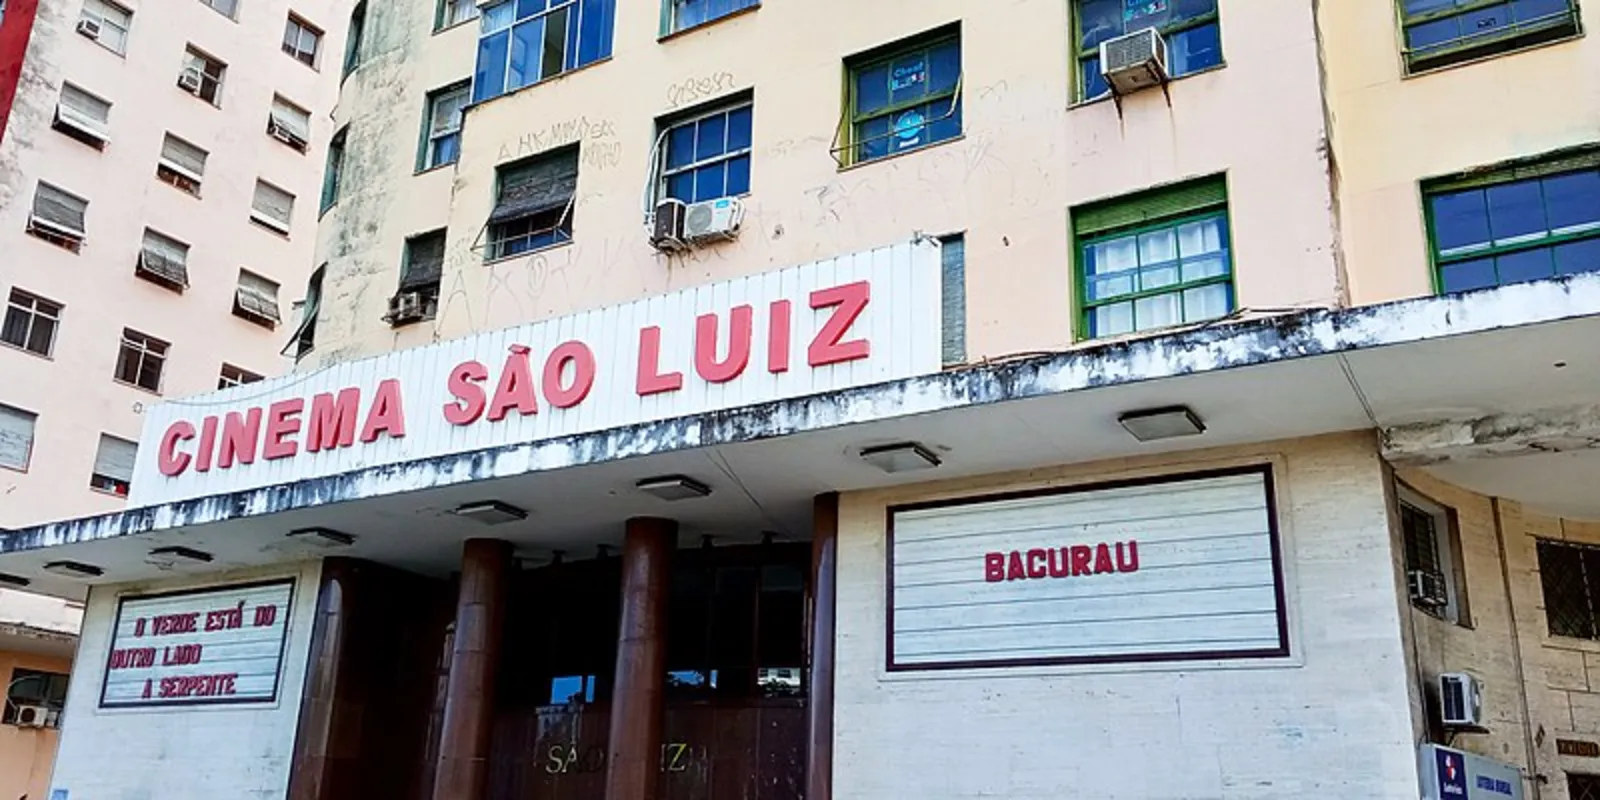 O cinema São Luiz, no Recife, ainda em pé, exibindo "Bacurau", outro filme de Kleber Mendonça Filho